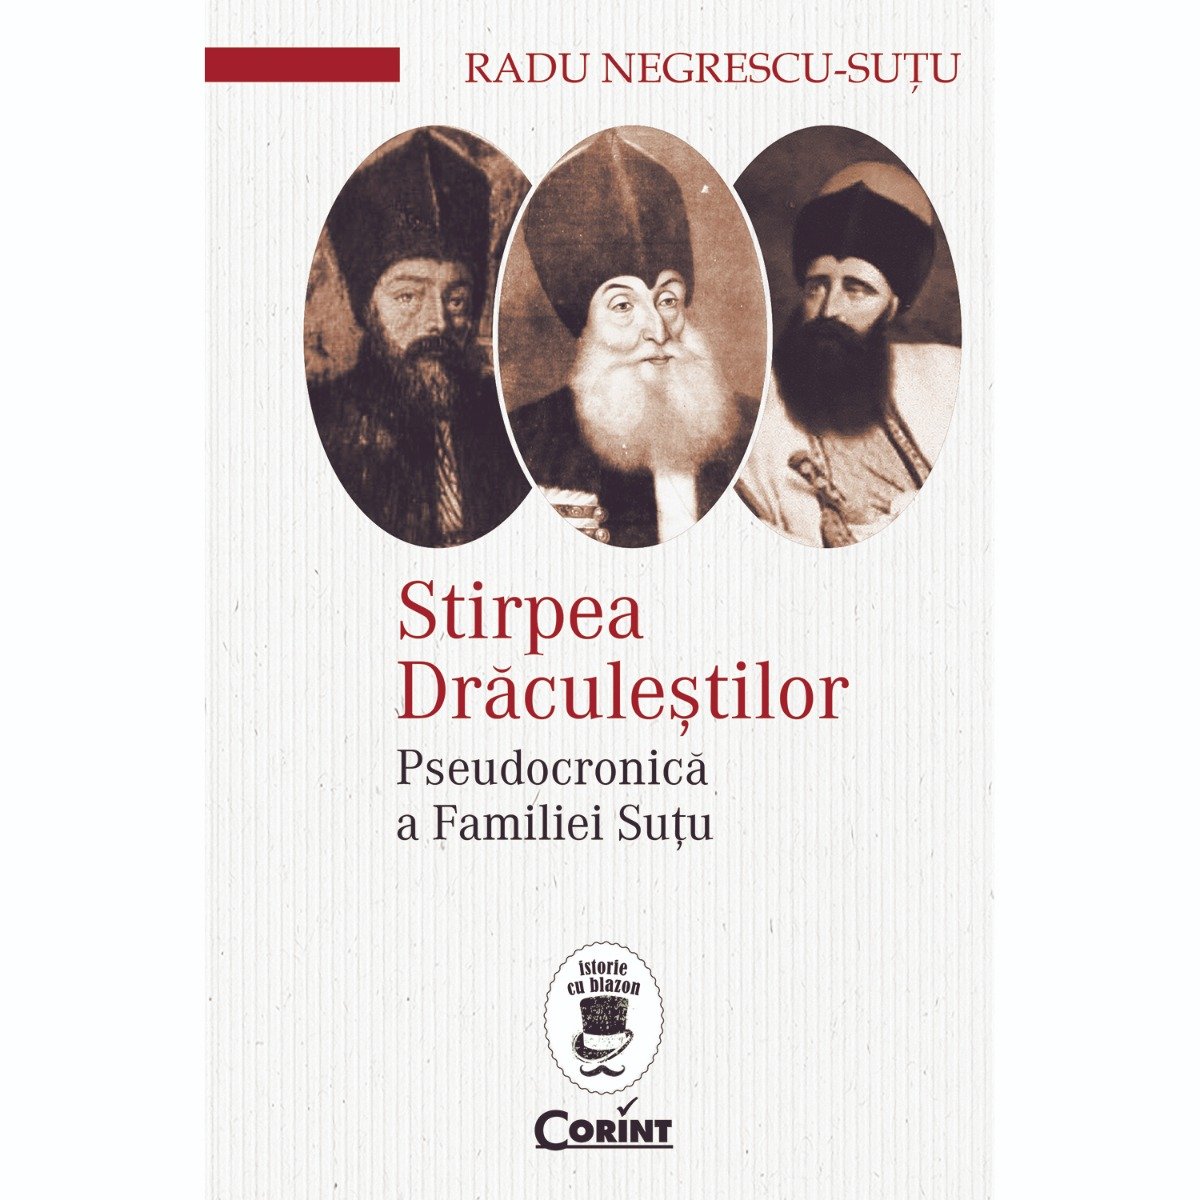 Carte Editura Corint, Stirpea Draculestilor. Pseudocronica a Familiei Sutu, Radu Negrescu-Sutu Corint